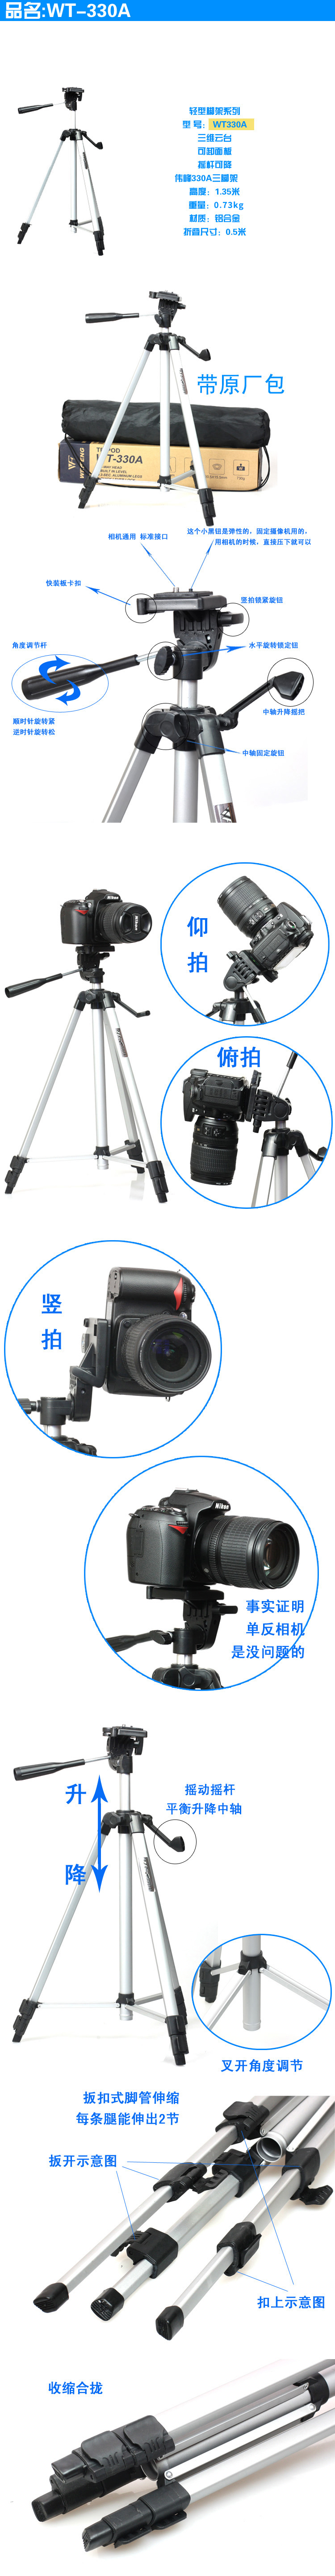 Giá Đỡ Máy Ảnh Tripod Weifeng Wt-330A Cho Canon Sony A9 A7M2 M3 A6500 A6000 A6300 A7R